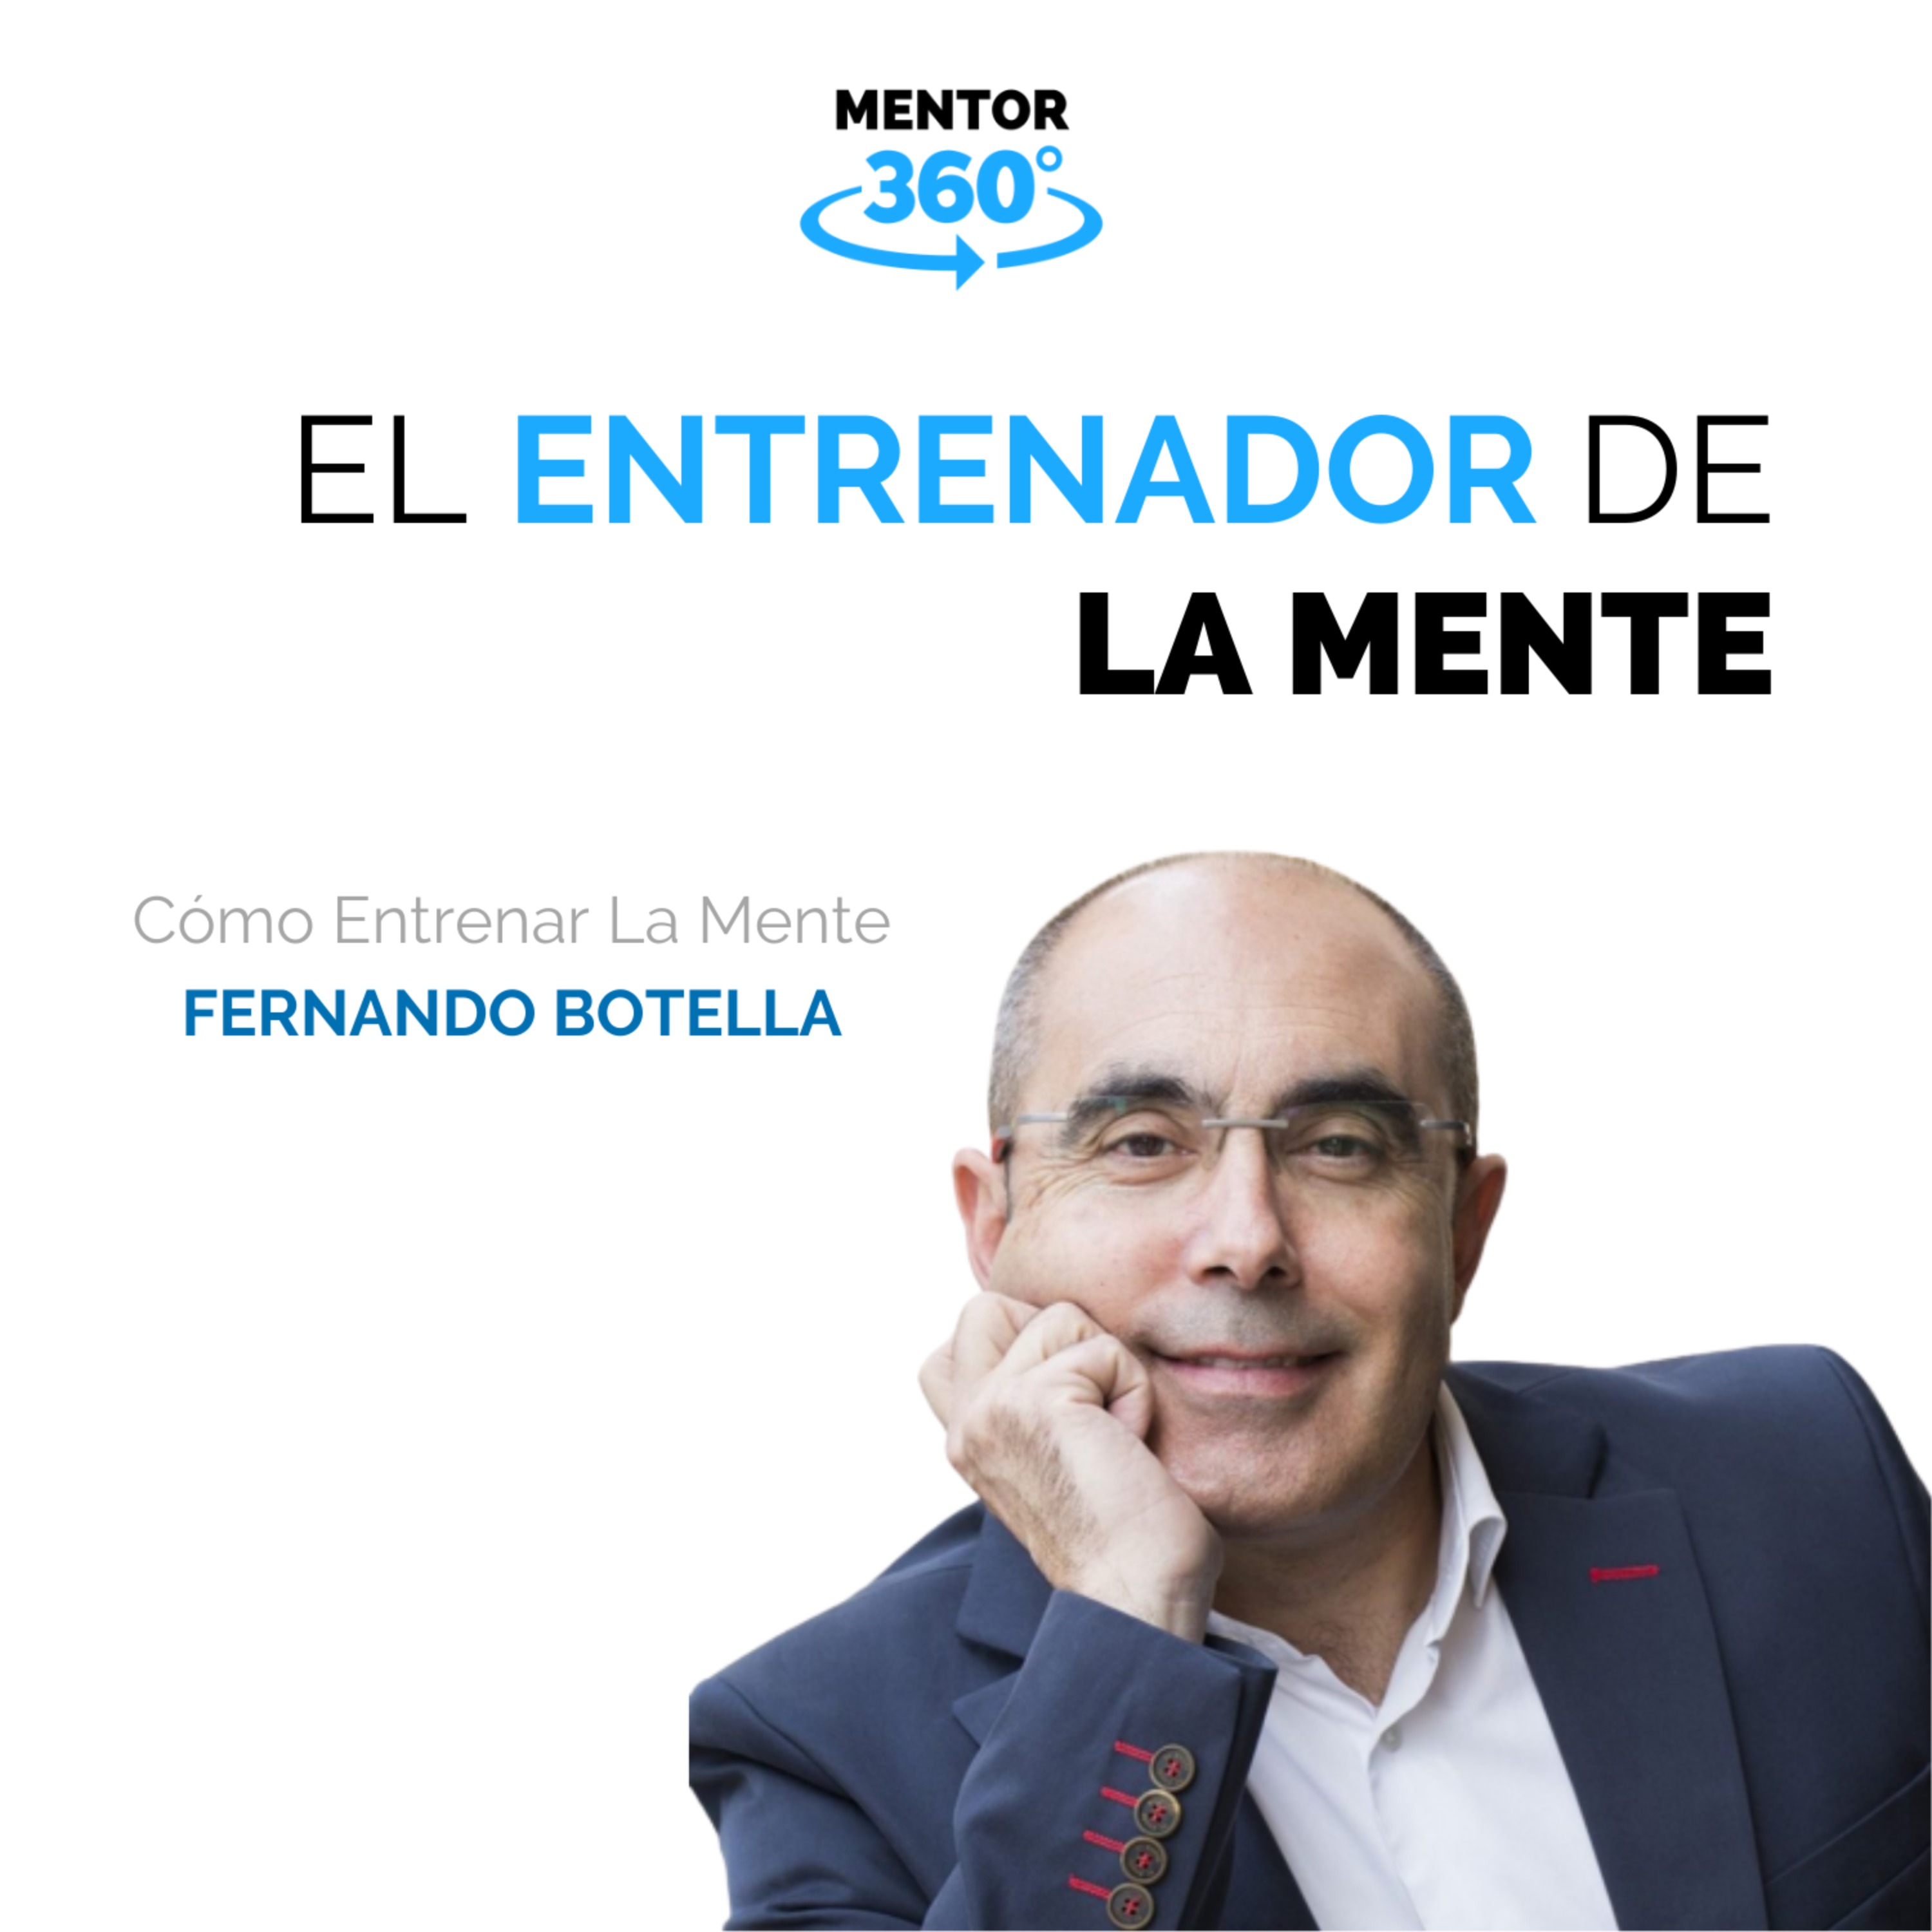 El Entrenador De La Mente - Cómo Entrenar La Mente - Fernando Botella - MENTOR360